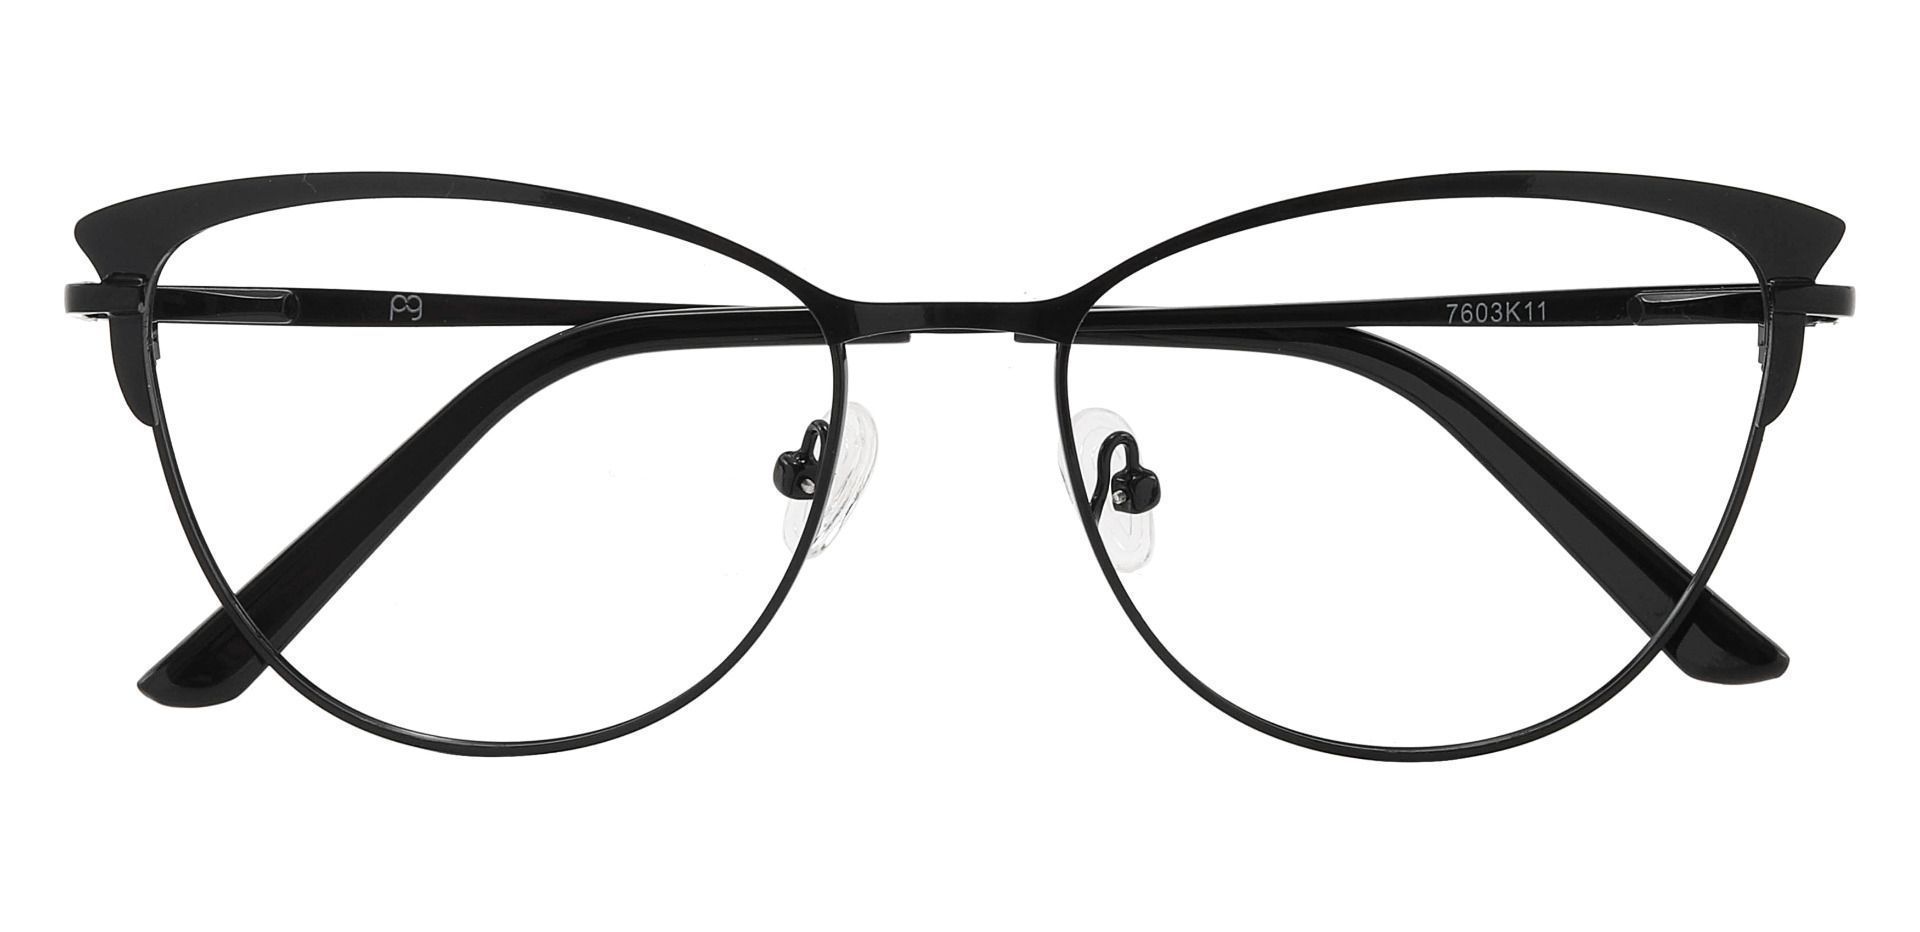 Ardmore Cat Eye Reading Glasses - Black